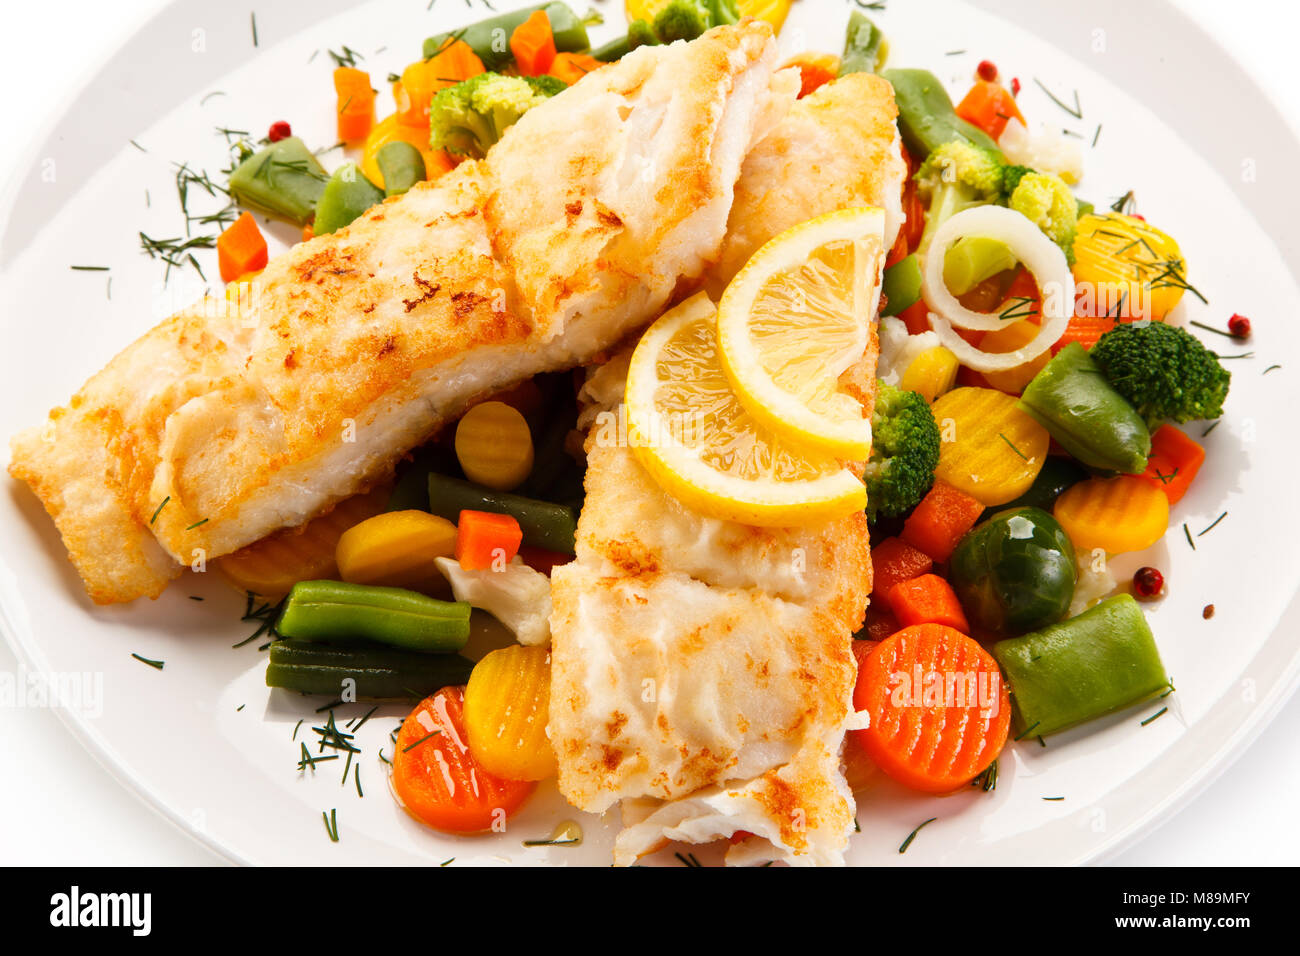 Fischgericht - Gebratenes Fischfilet und Gemüse Stockfoto